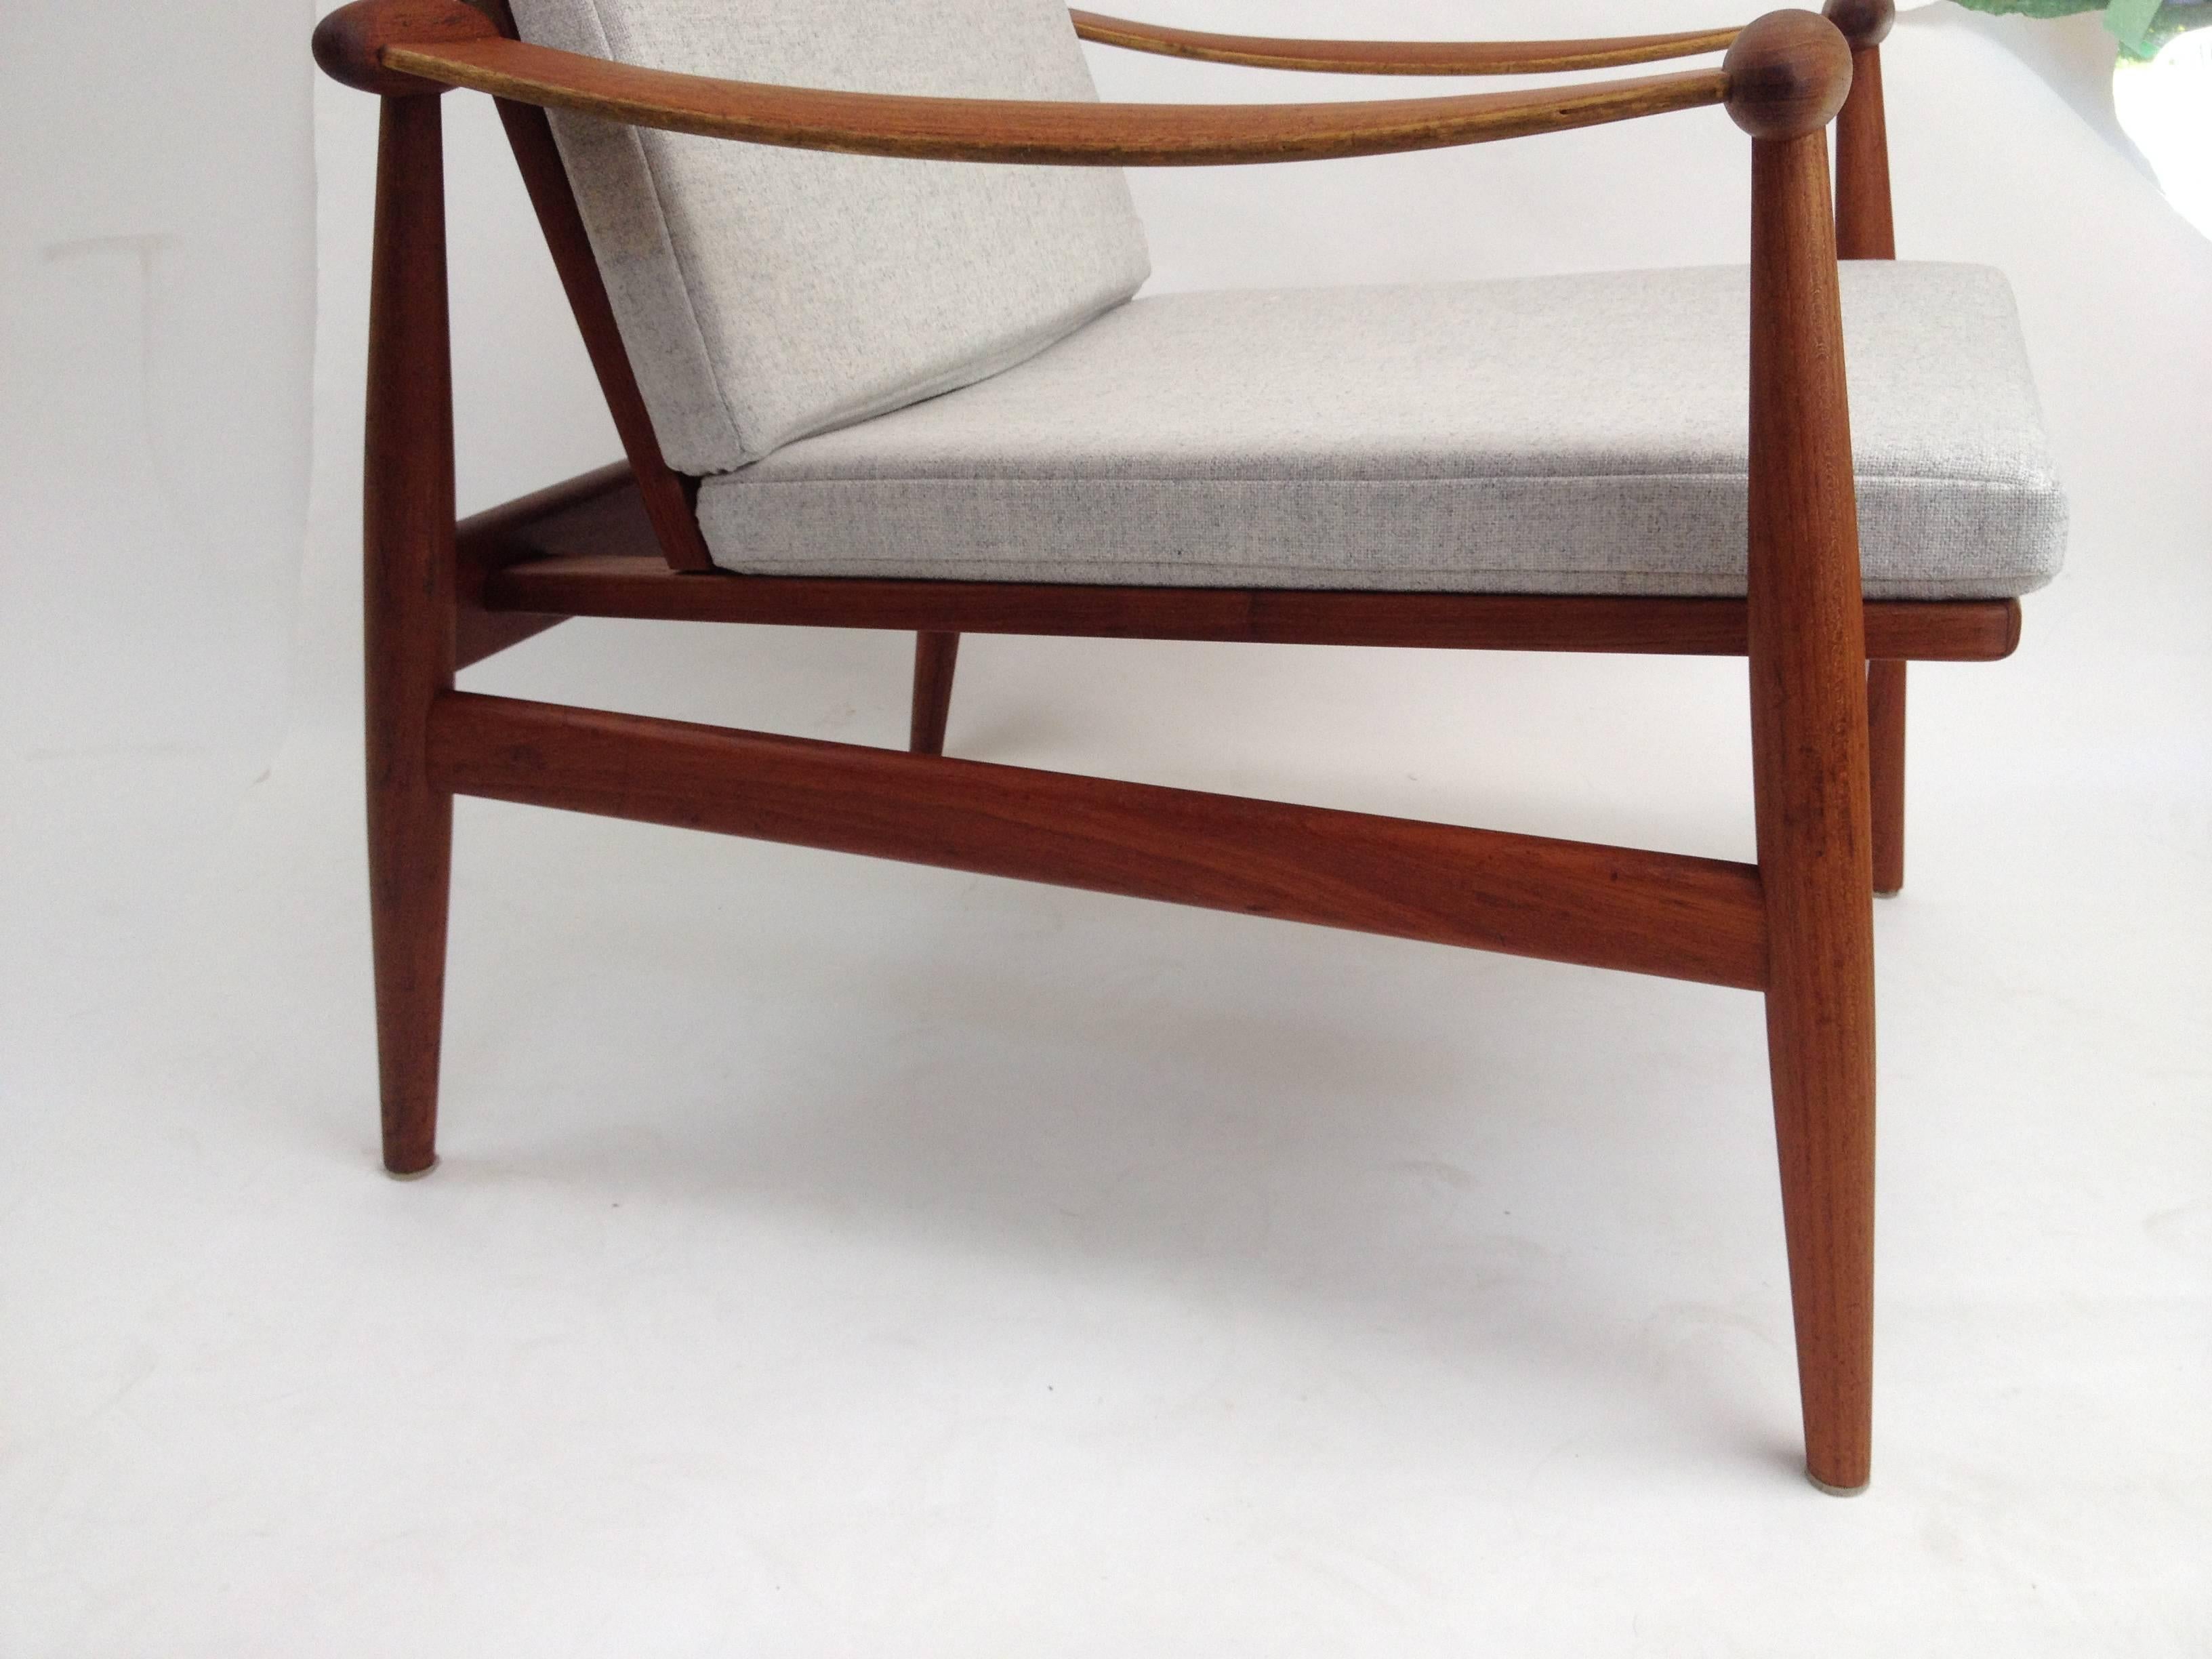 1950s Danish Teak Easy Chair Designed by Finn Juhl for France & Daverkosen For Sale 2